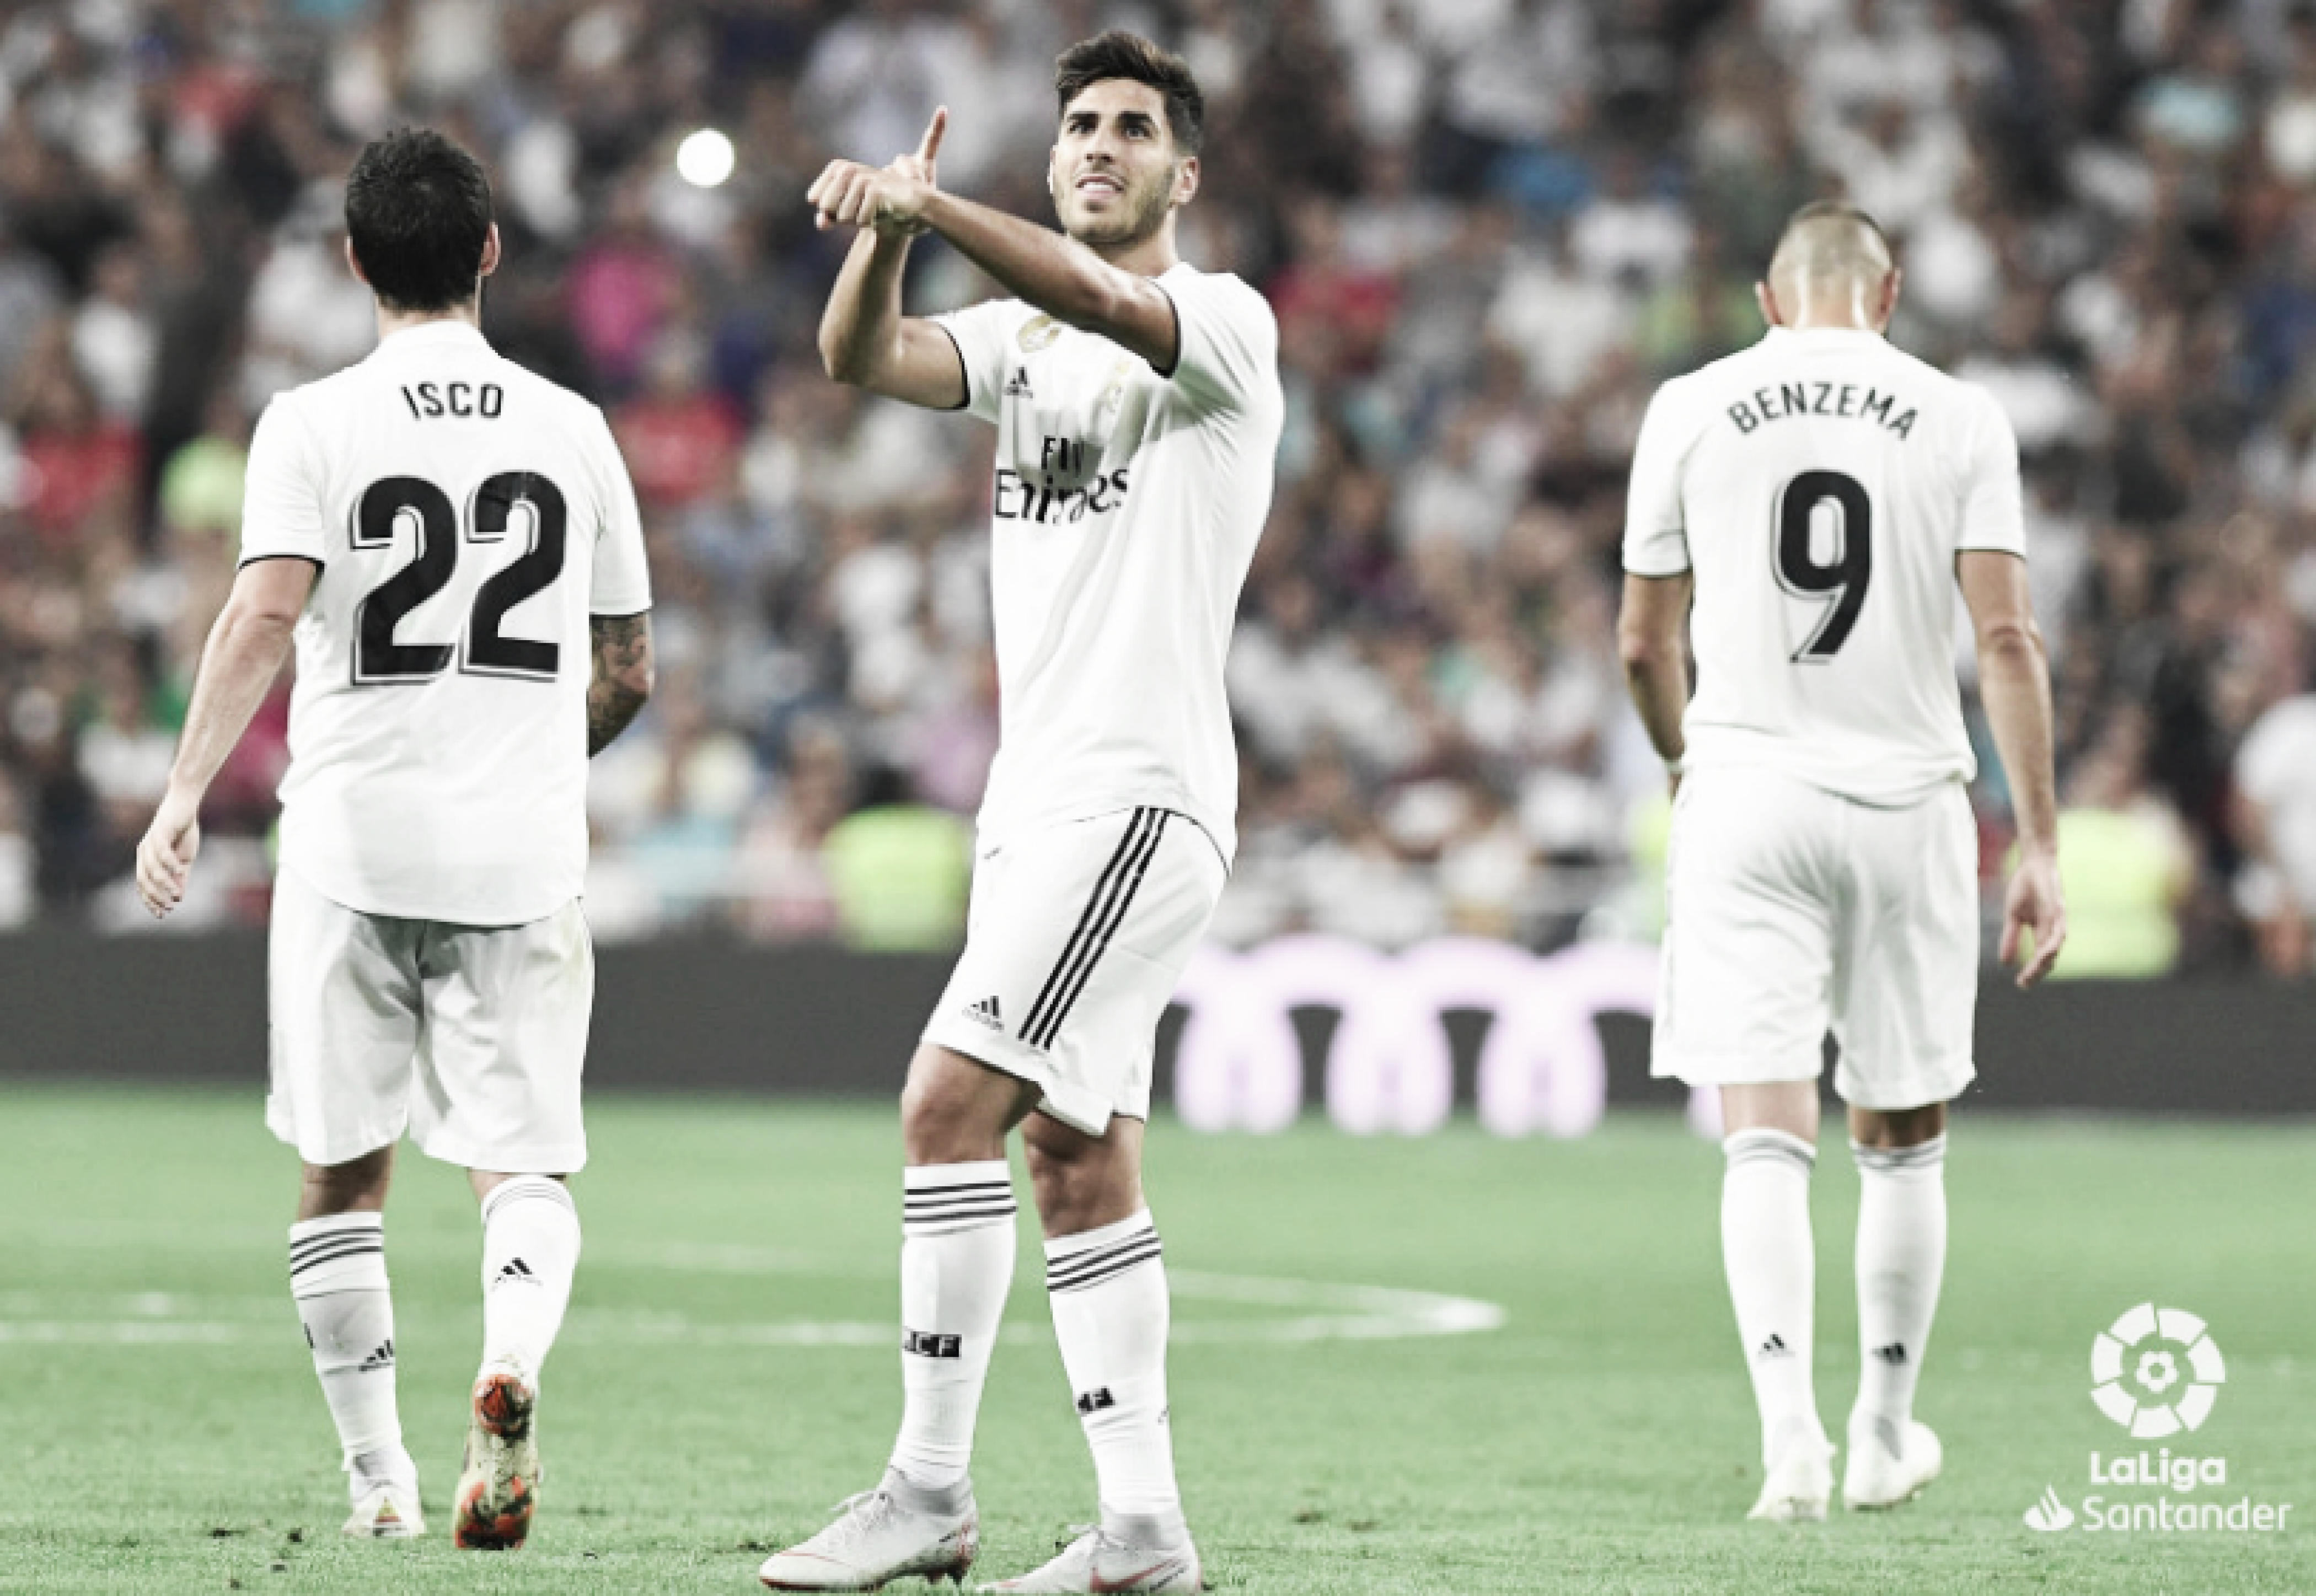 Asensio le da la victoria al Madrid con suspense arbitral